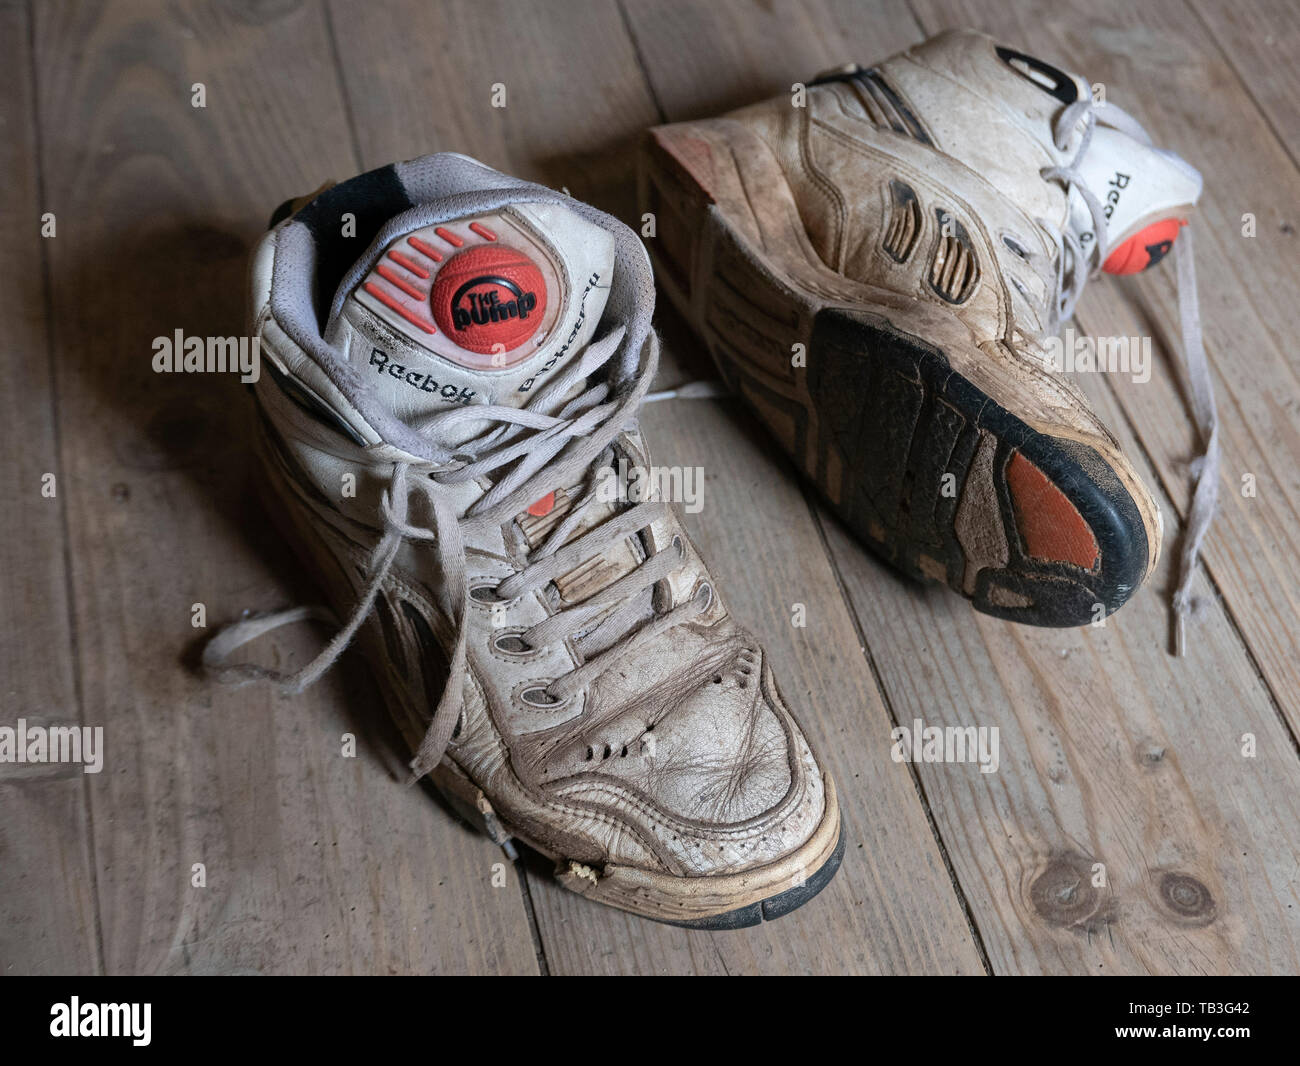 Reebok Sneakers Banque d'image et photos - Alamy